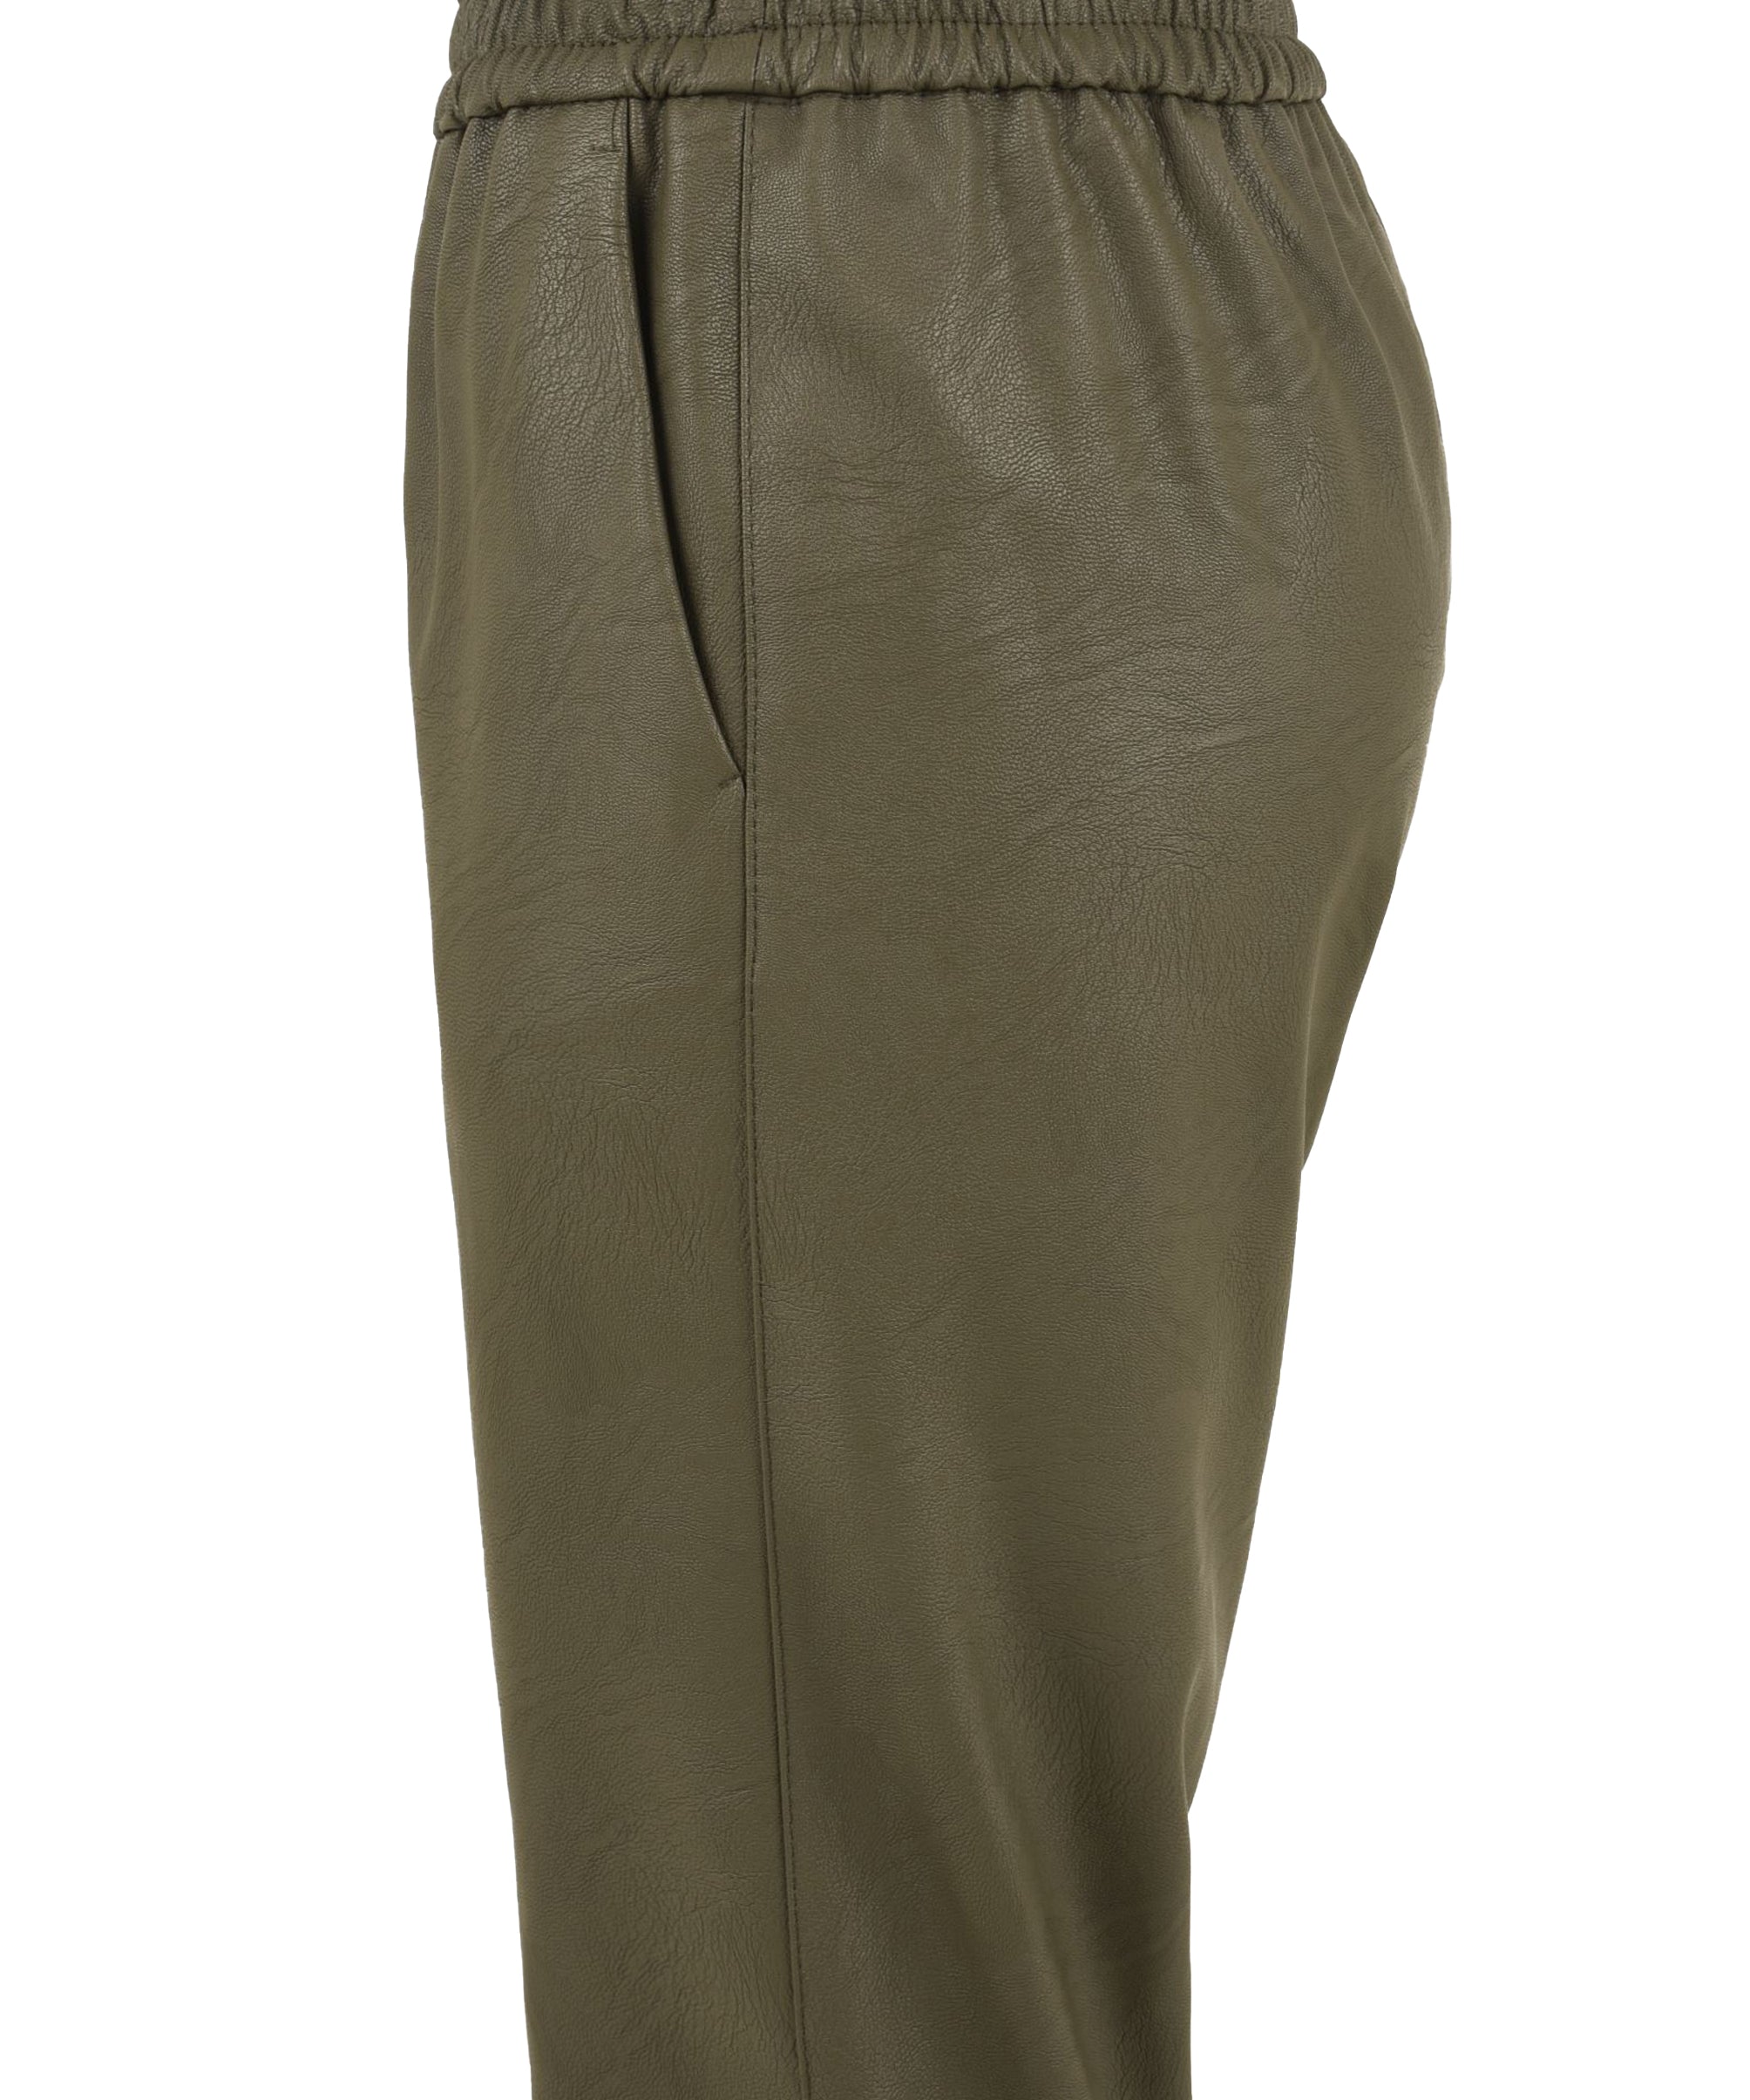 Pantalone Donna ecopelle verde, Solotre, lato